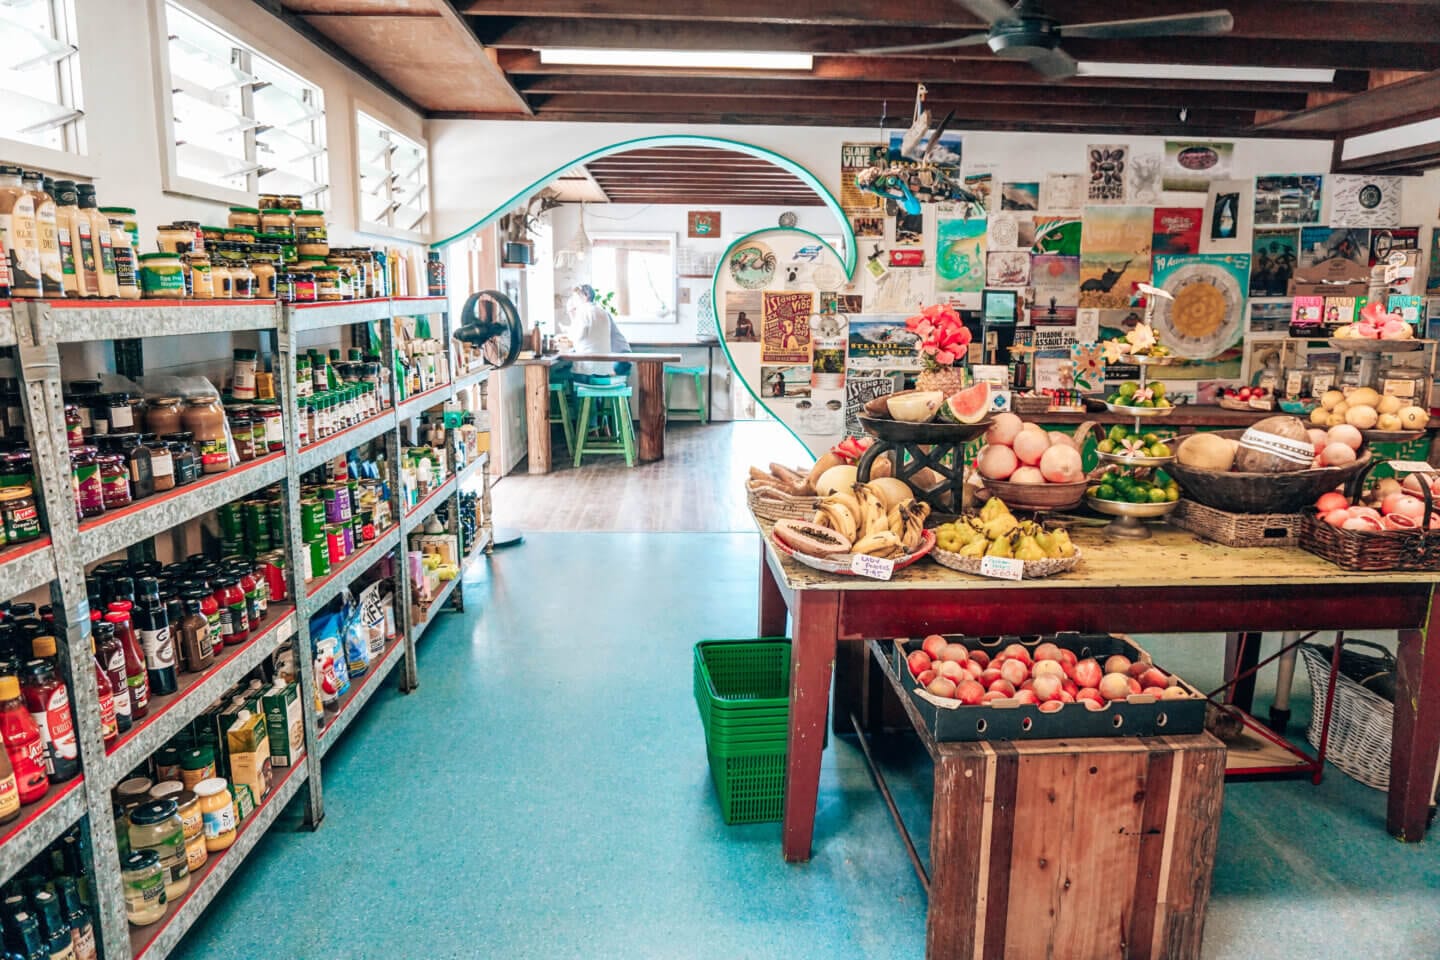 Inside Green Room Grocery store on Stradbroke Island